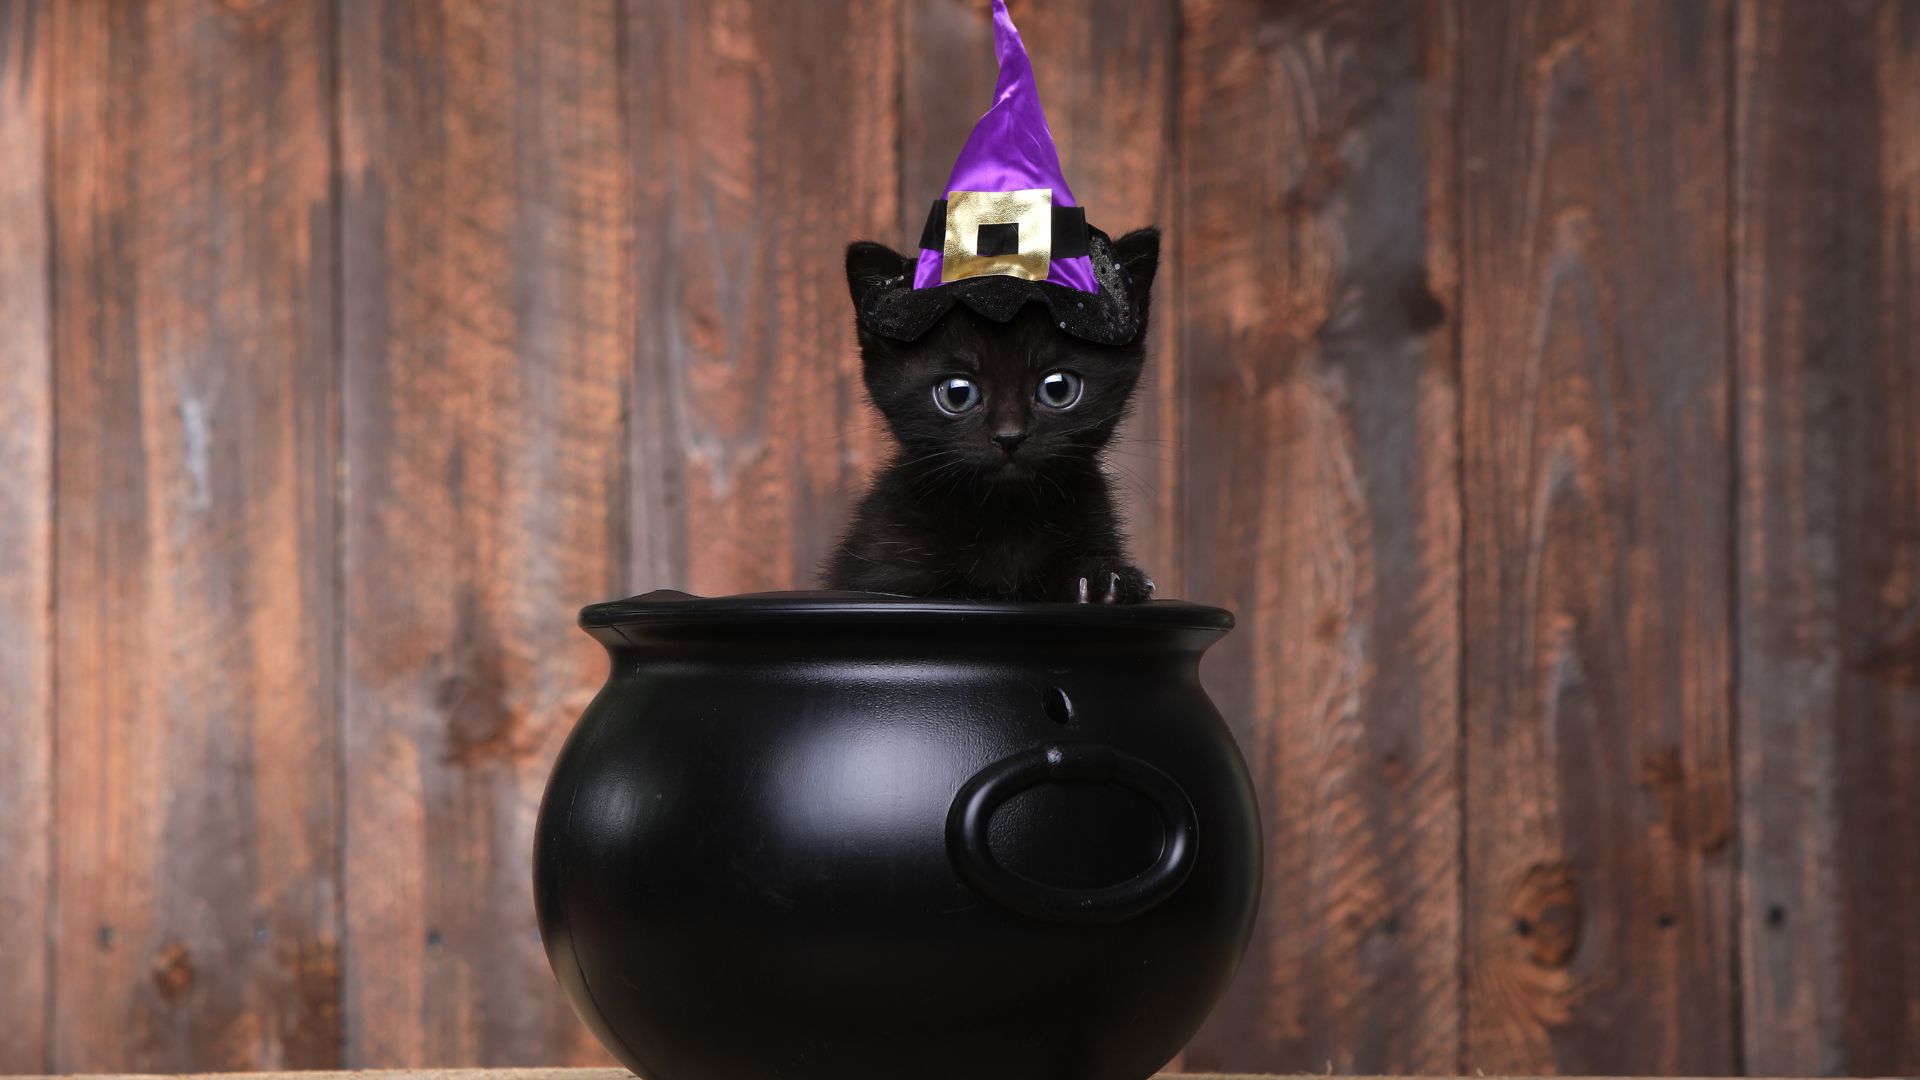 Imagem de fundo amadeirado. Em destaque temos o calderão de uma bruxa e dentro dele um gatinho preto usando um chapéu roxo também de bruxa.